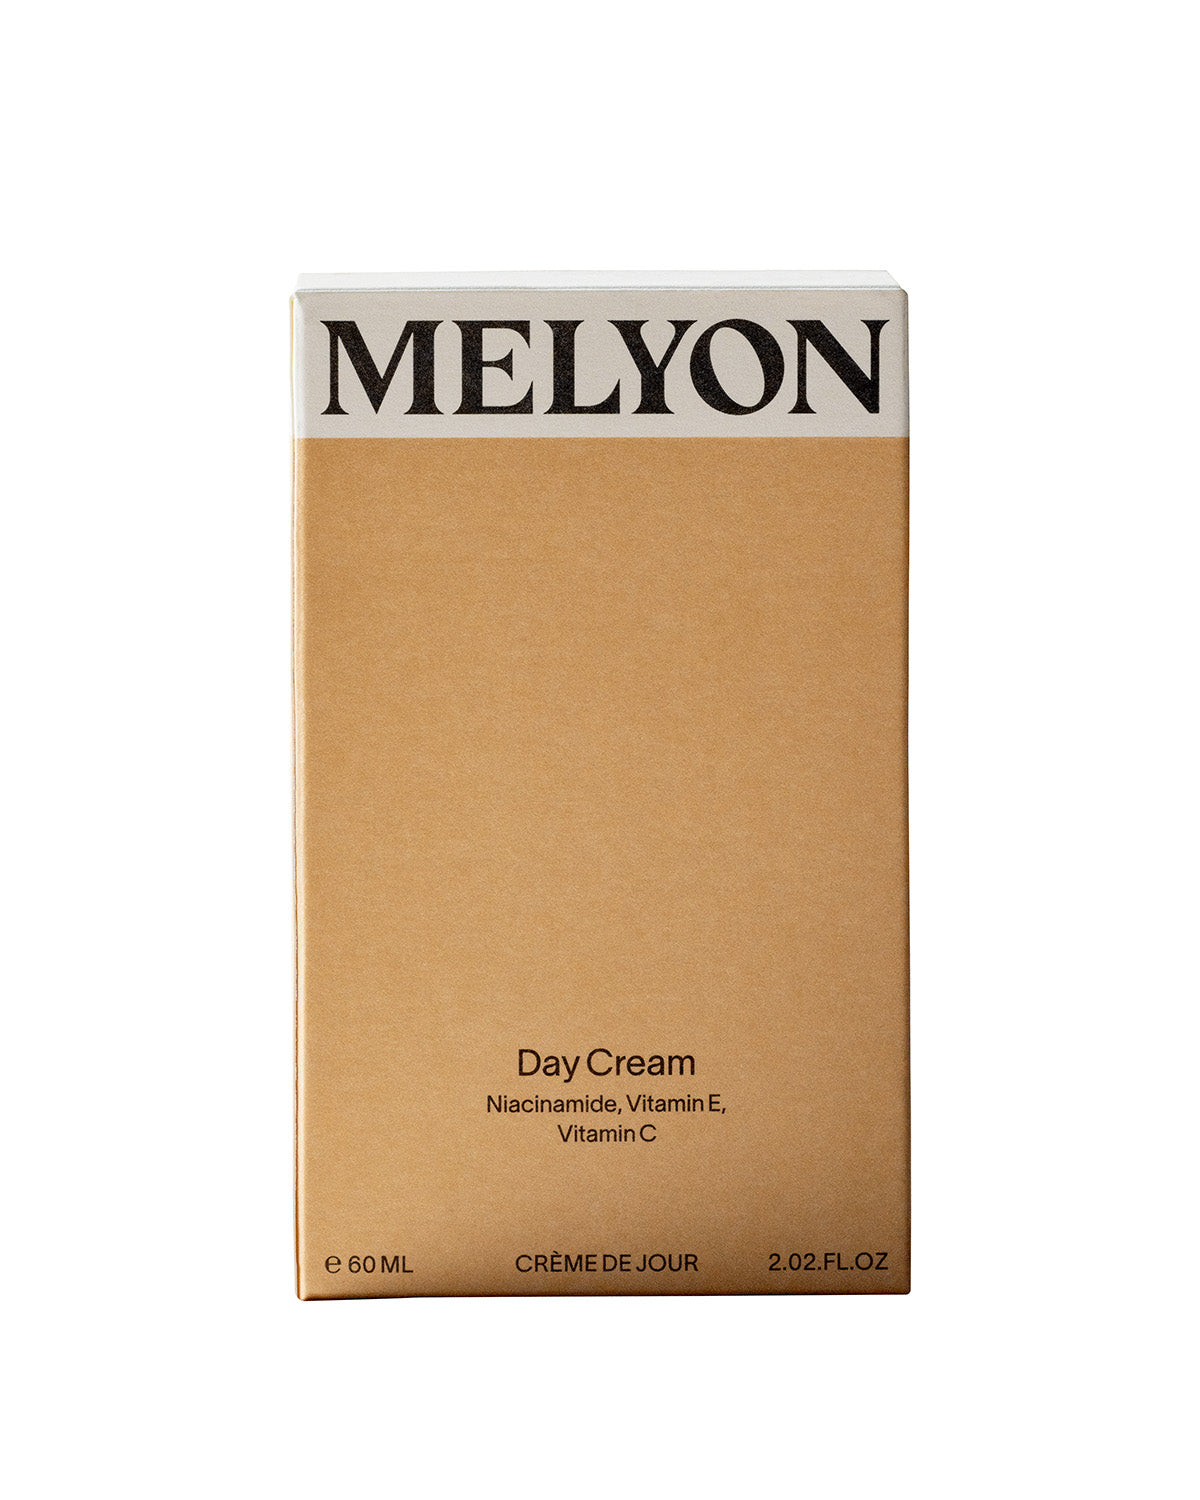 MELYON - DAY CREAM